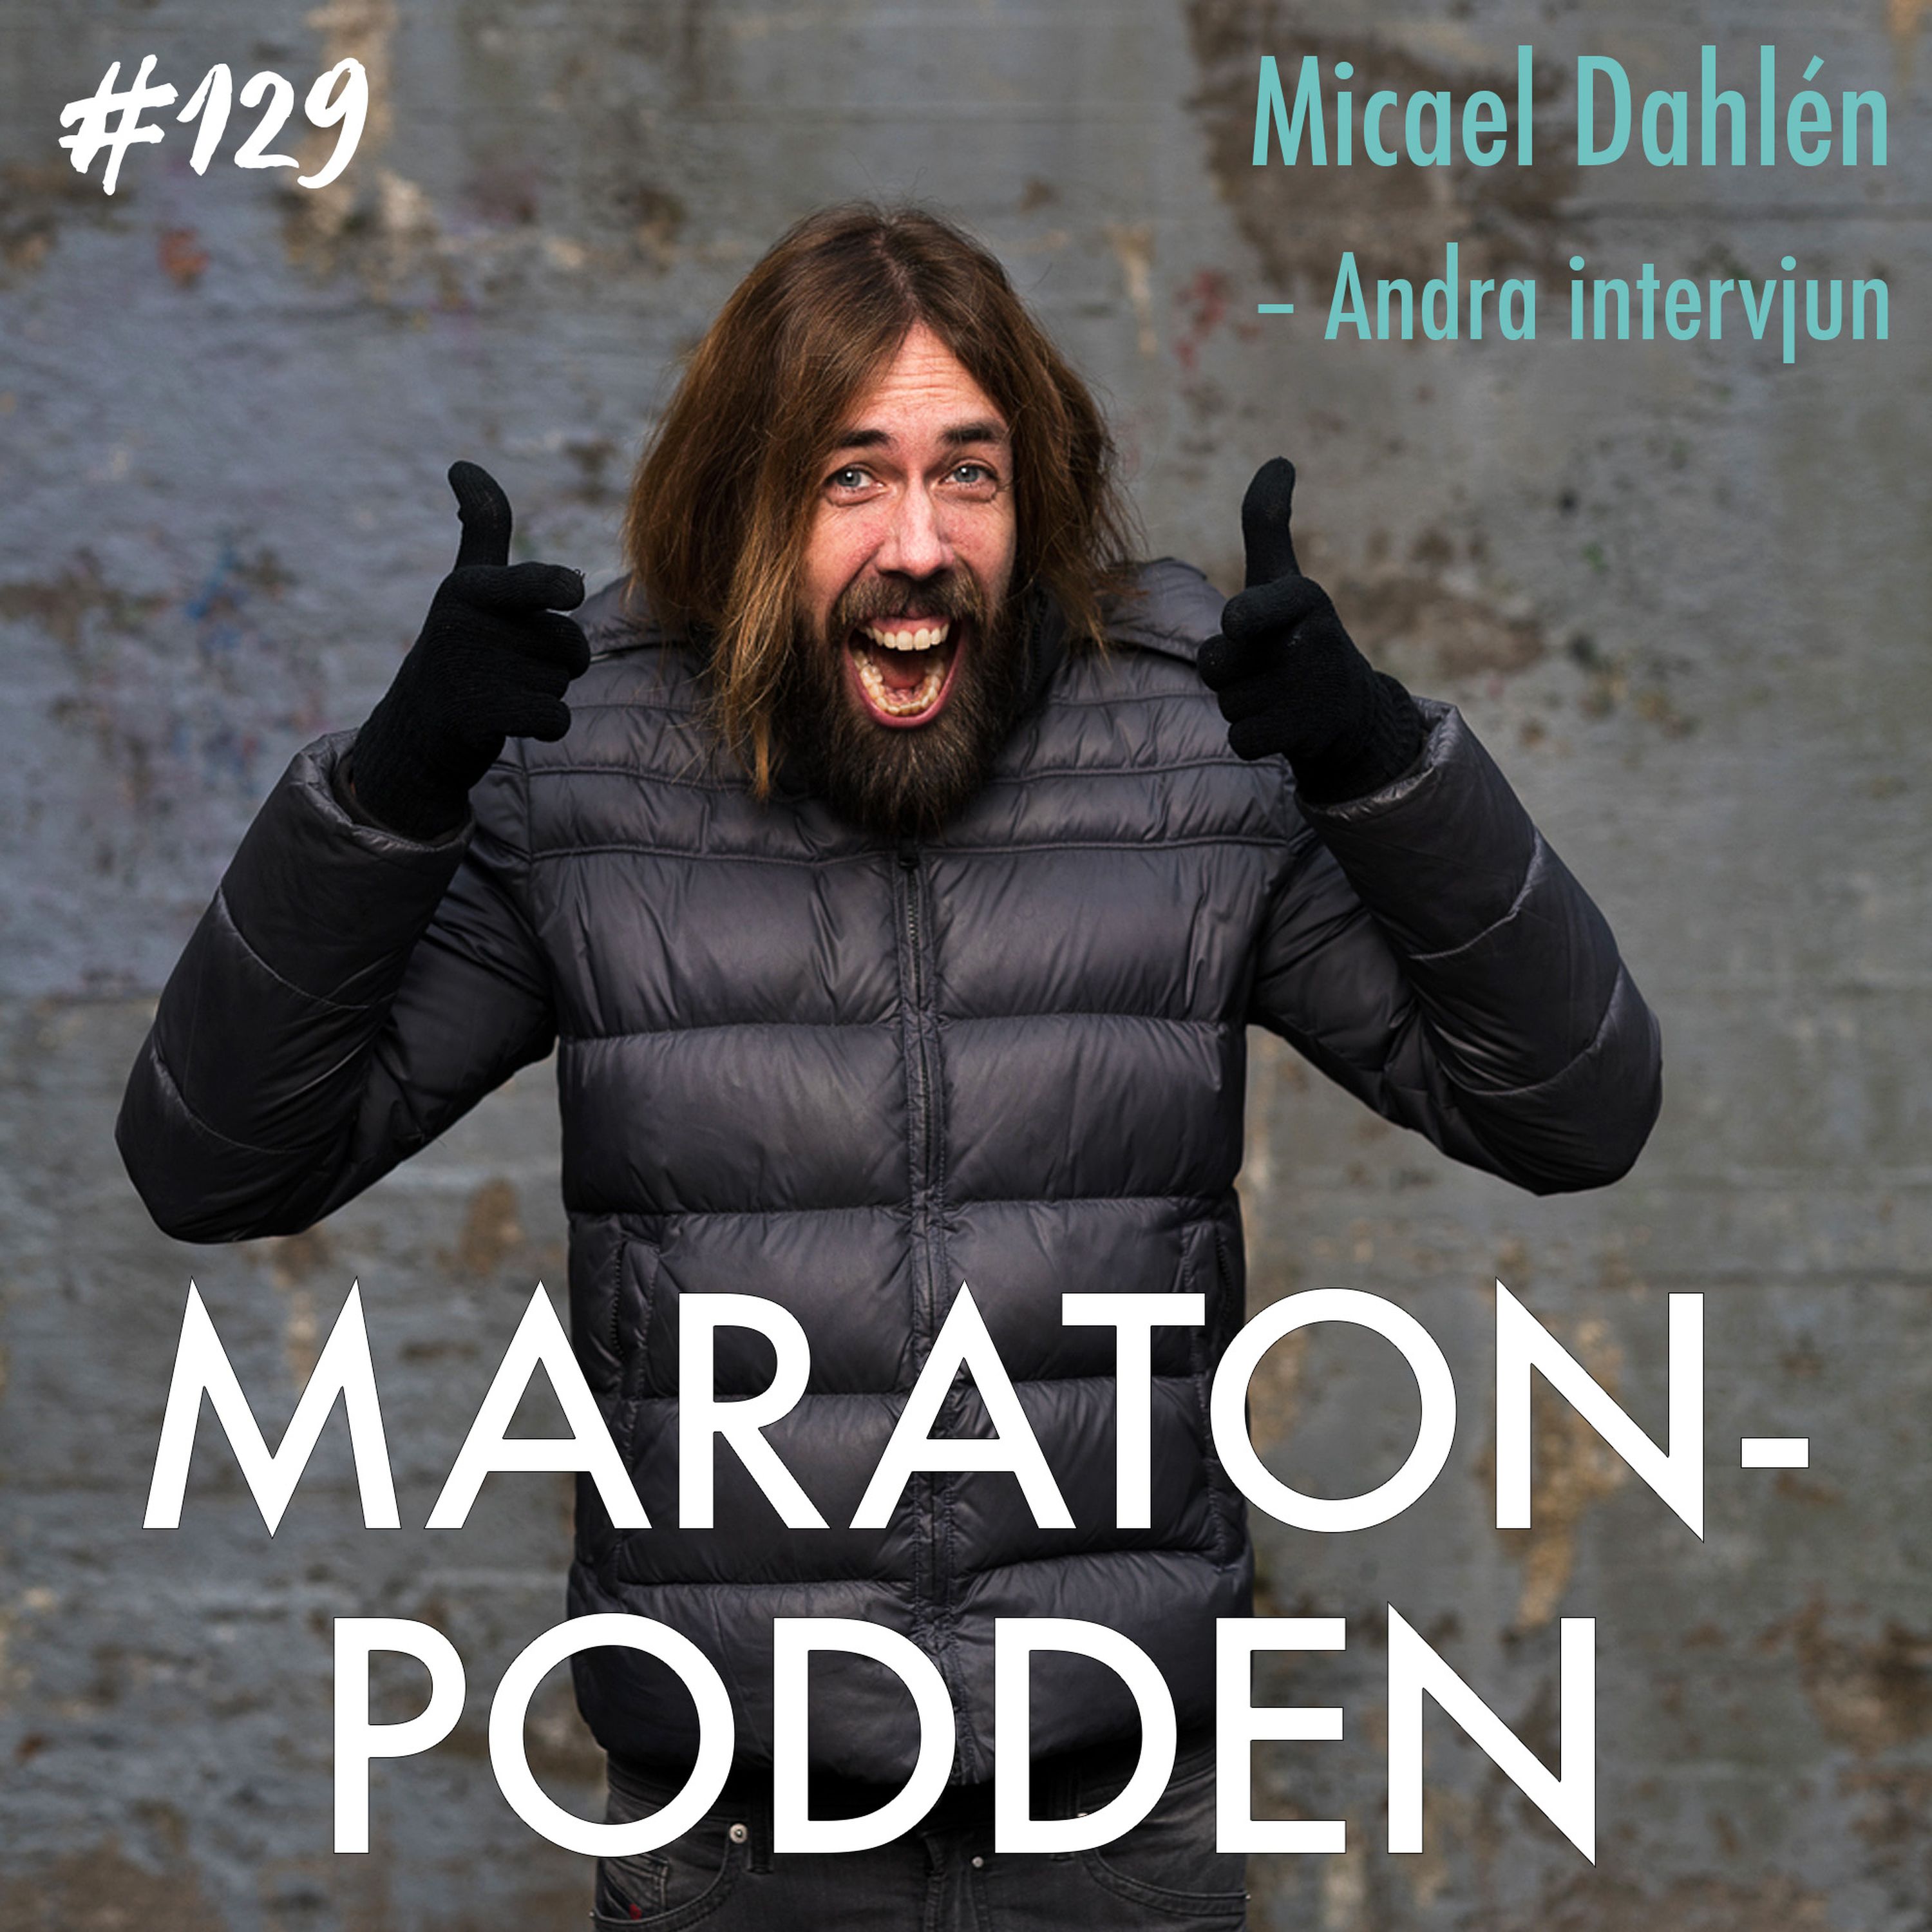 #129: Micael Dahlen, om Citodon, jippolöpning och soffspringning